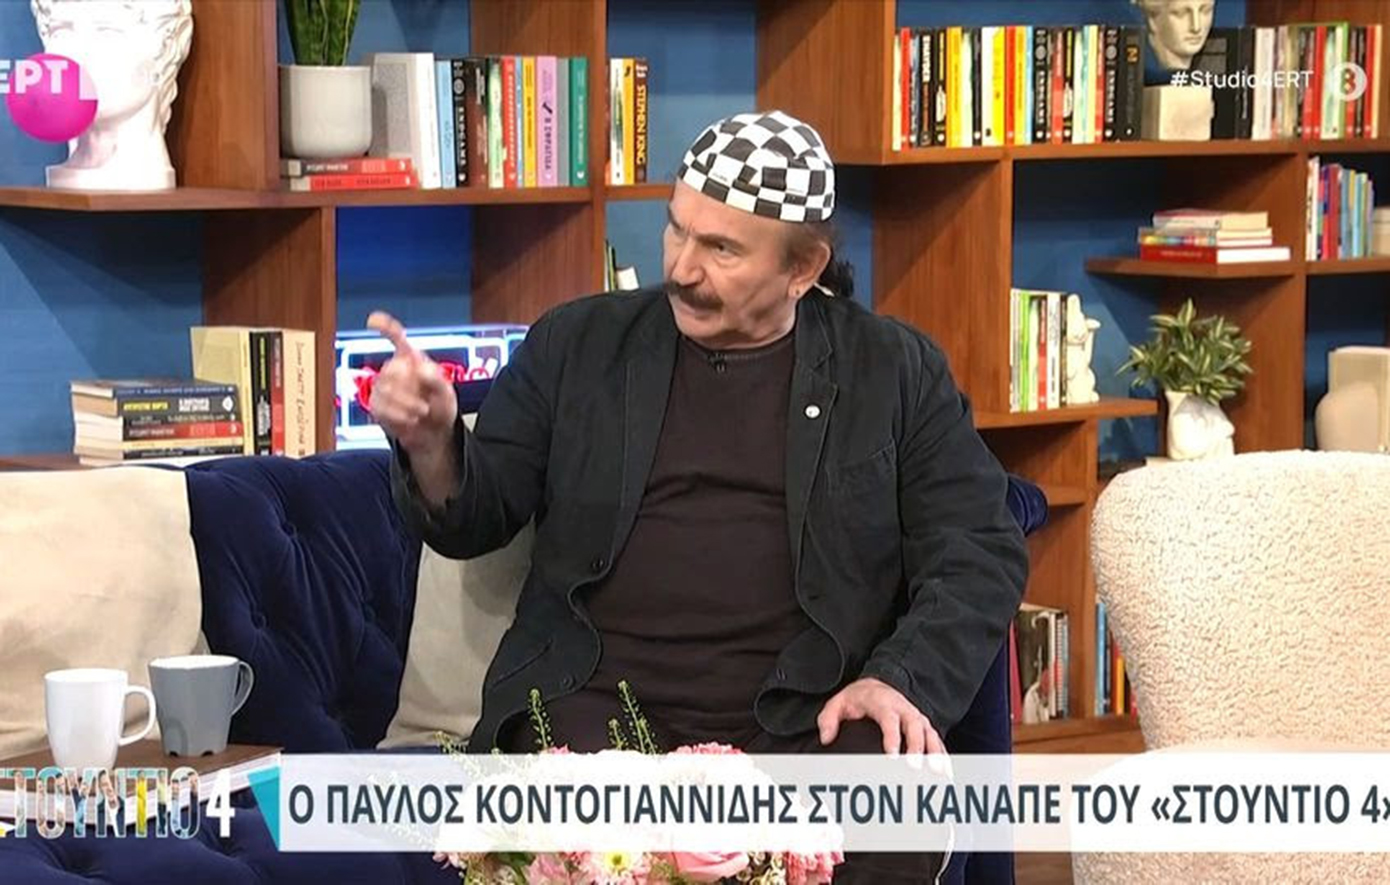 Κοντογιαννίδης: Τι του είχε κάνει ο Θανάσης Αναγνωστόπουλος και «αποφάσισε» να του μιλά λιγότερο;